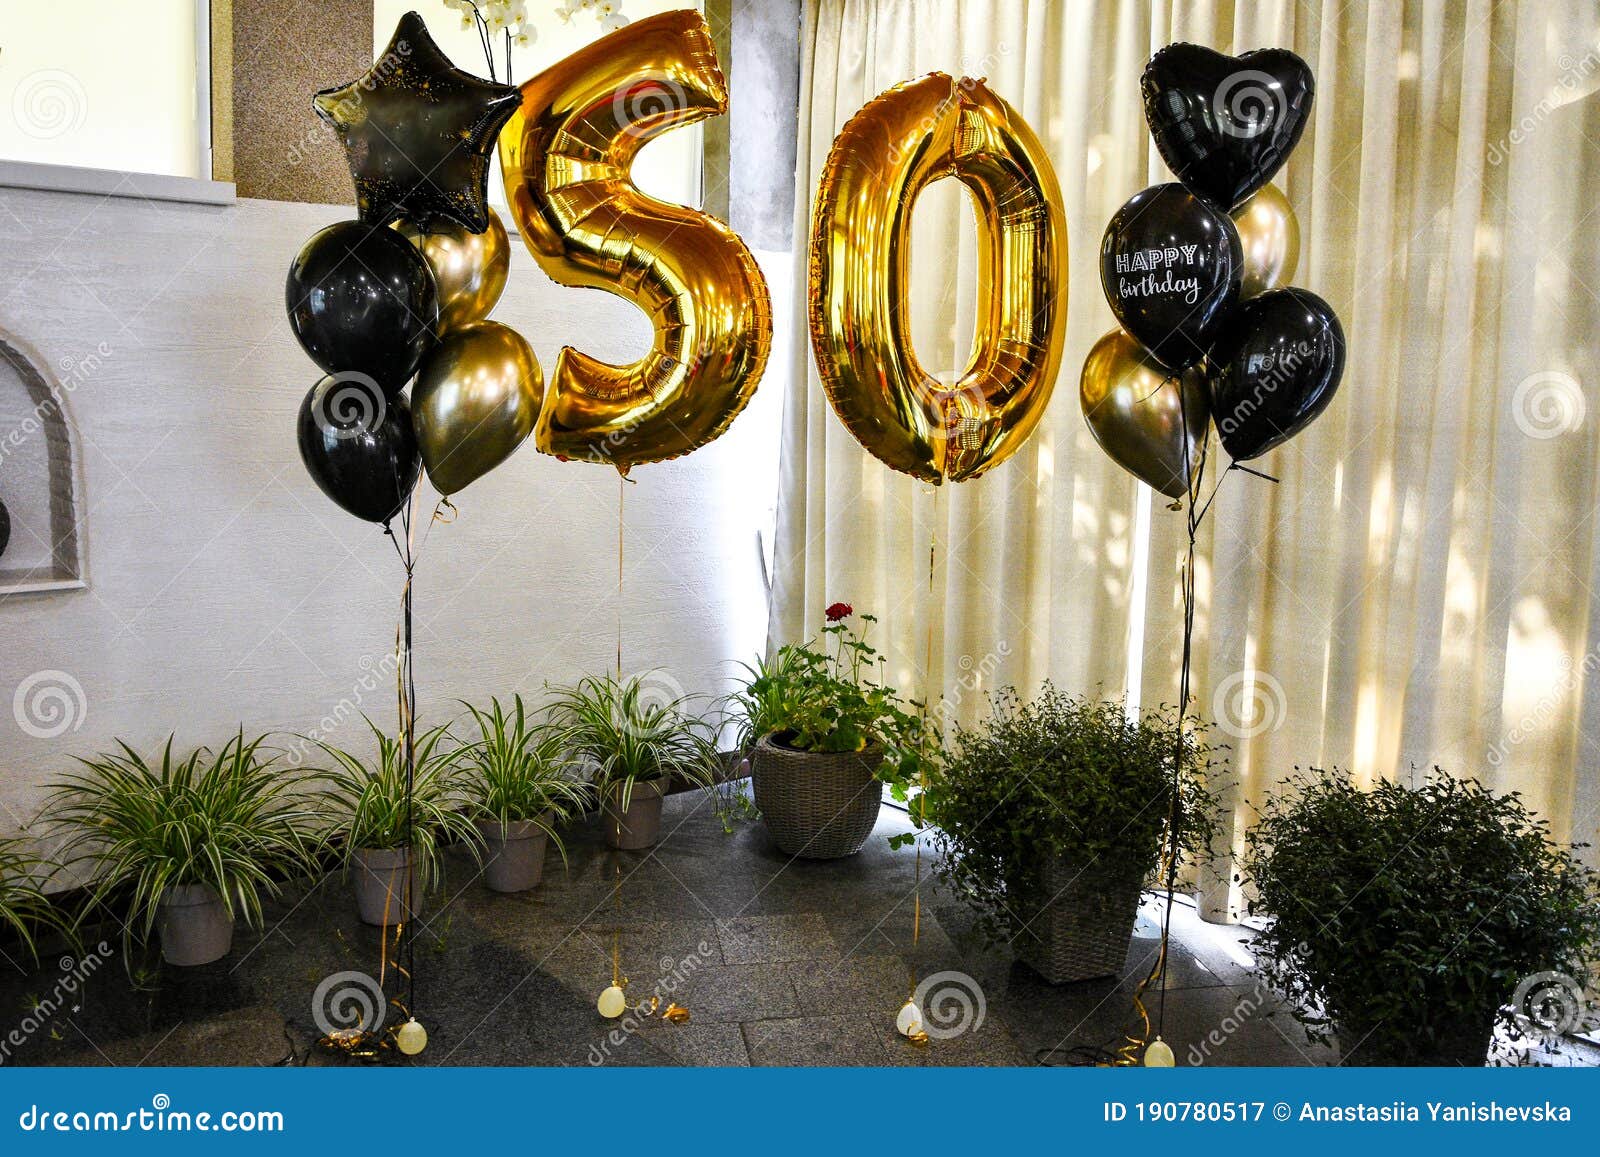 Fiesta de 50 Años